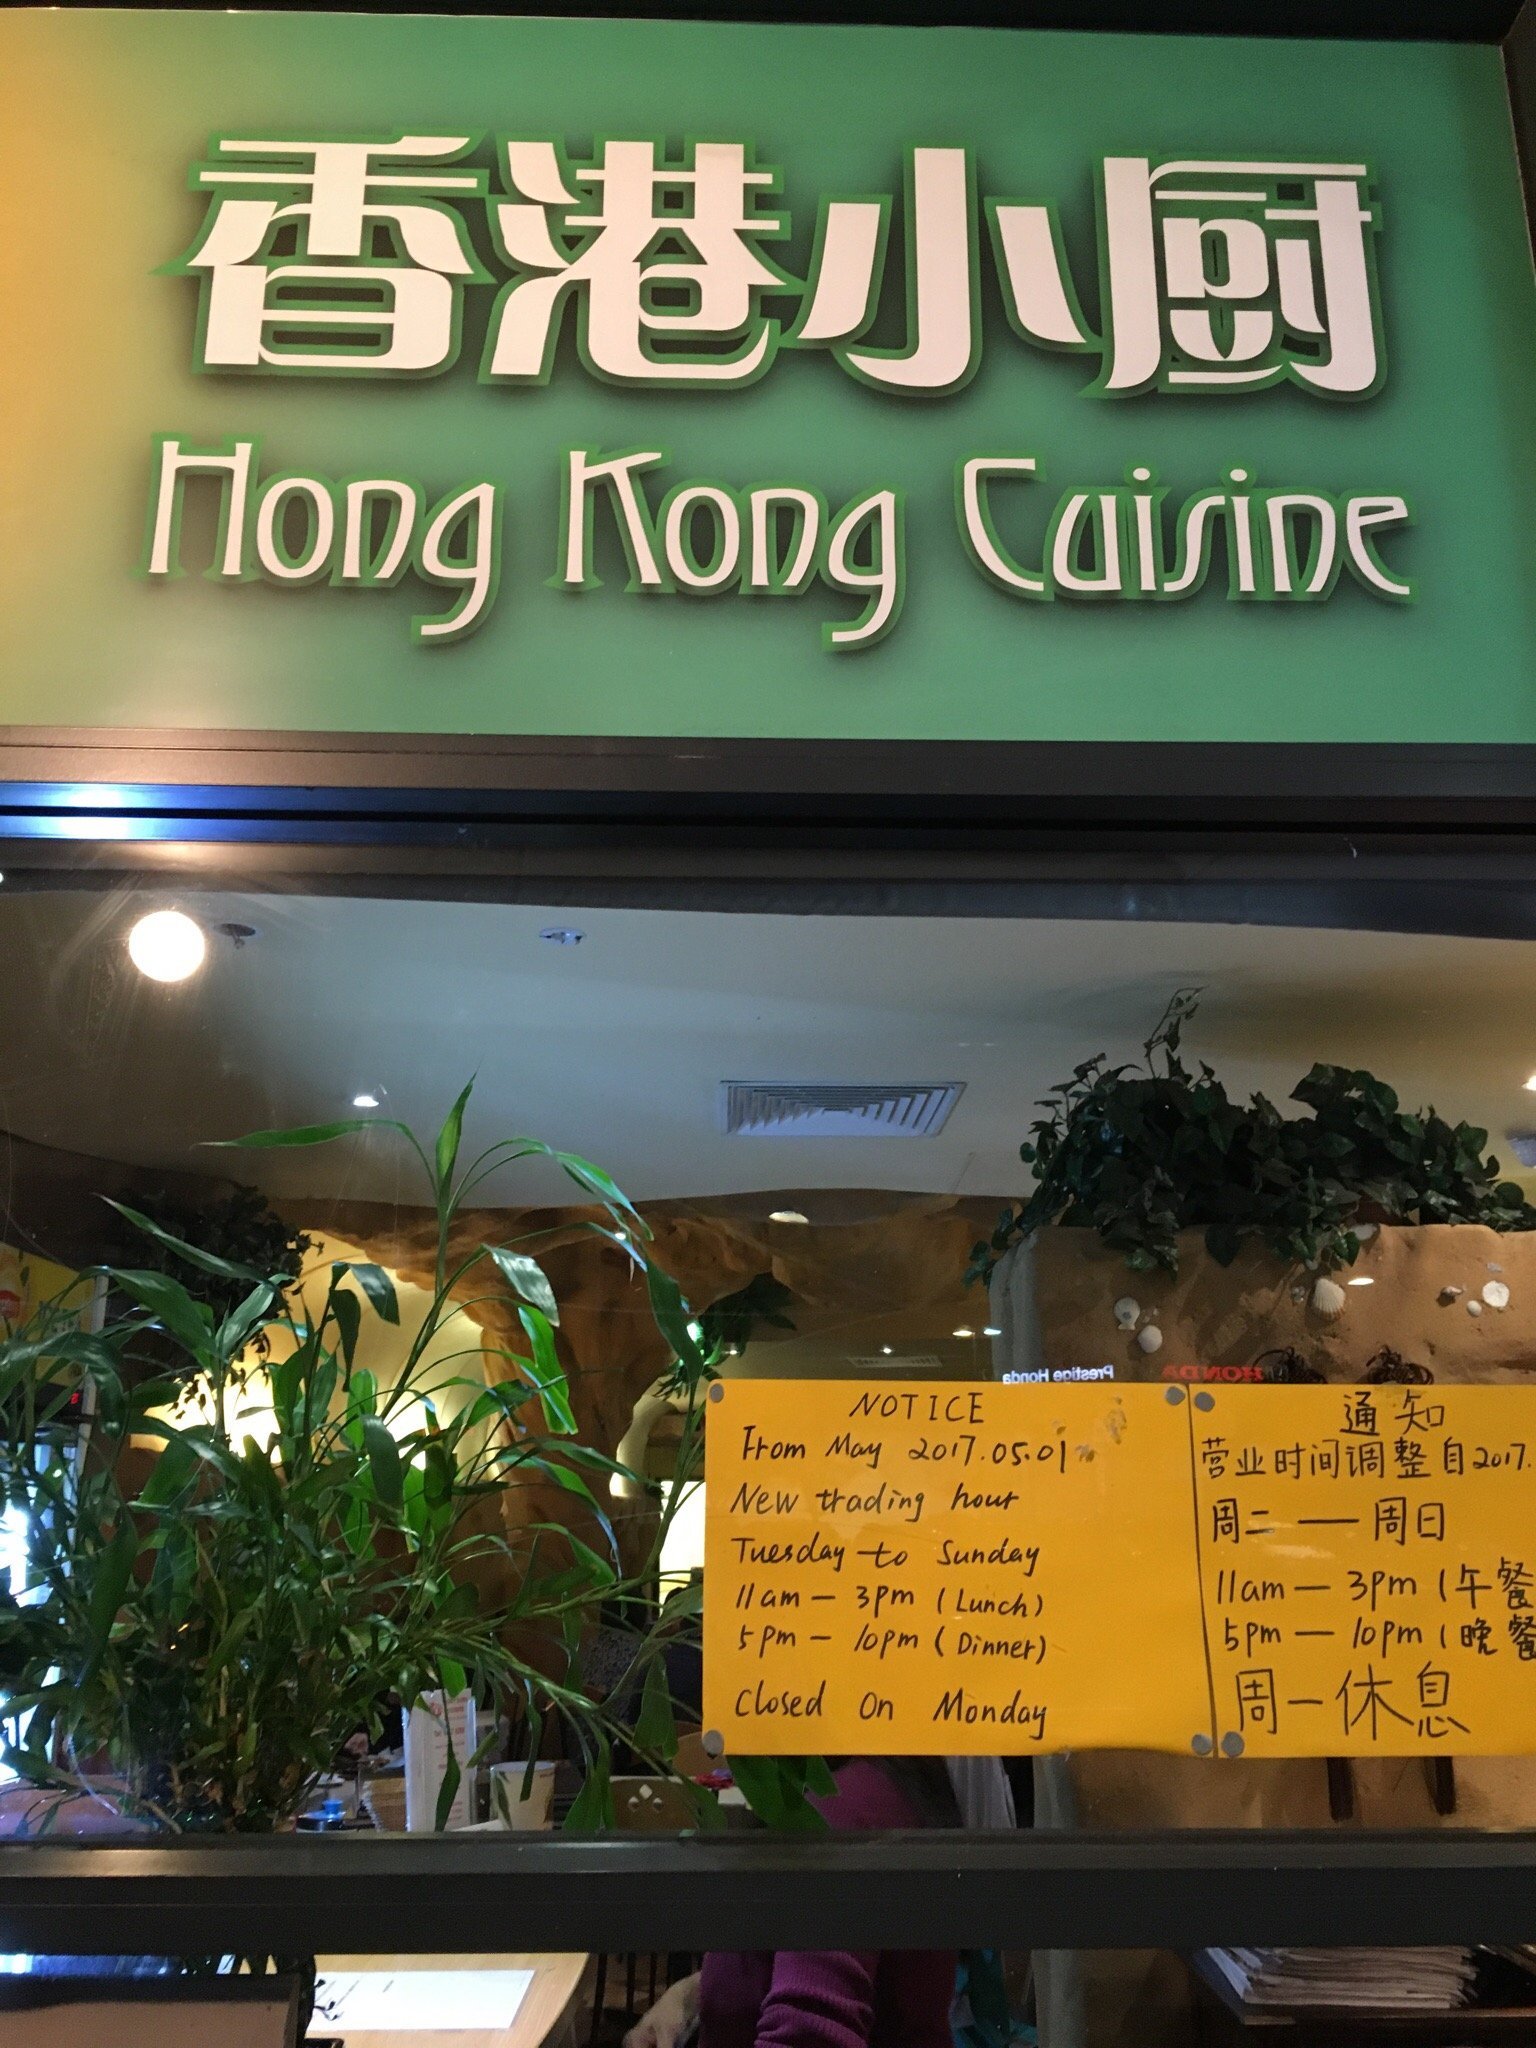 Hong Kong Cuisine - thumb 2